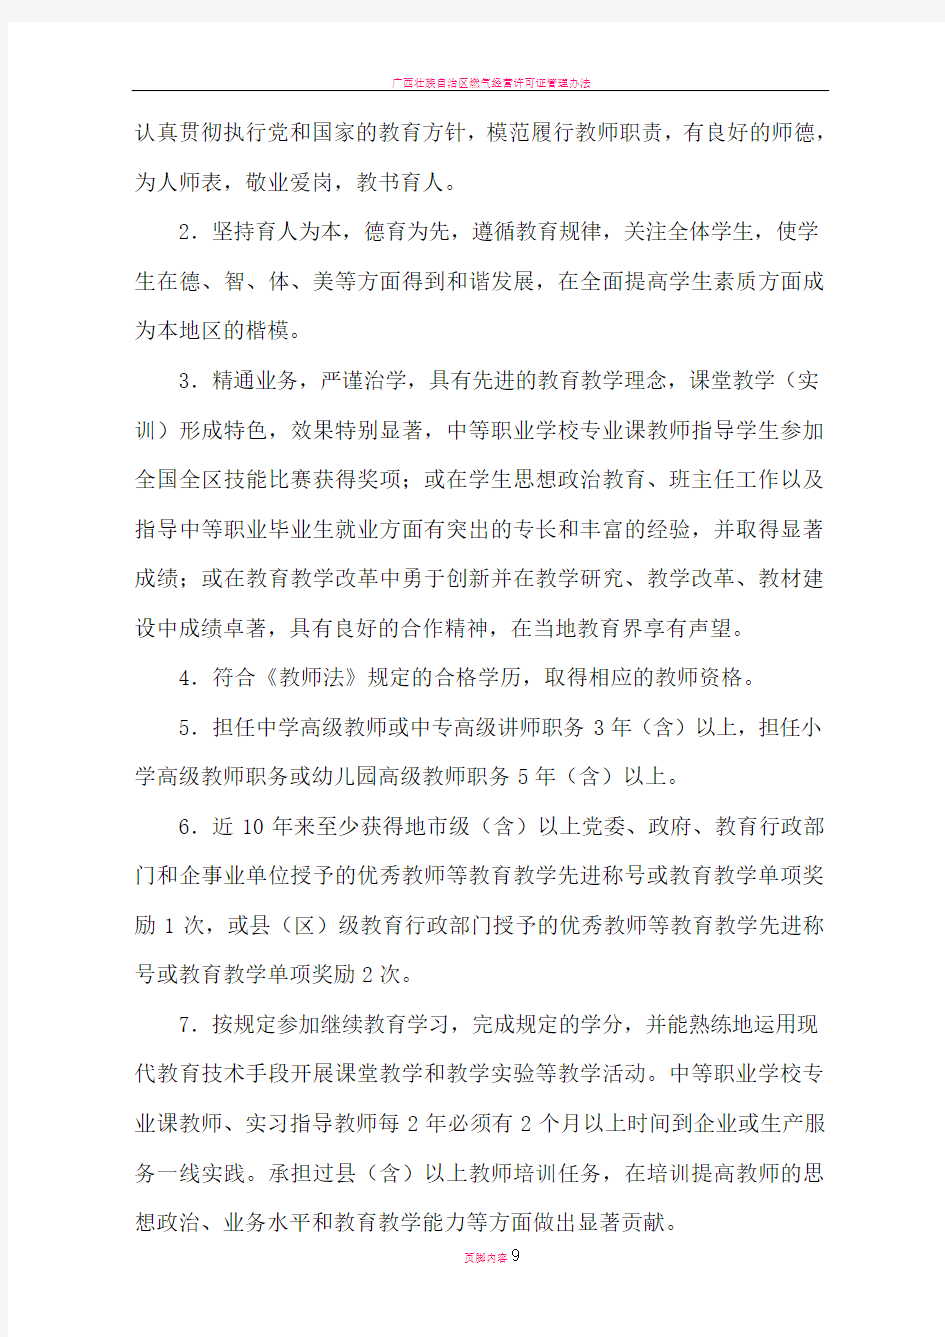 广西壮族自治区特级教师评选和管理办法(试行)